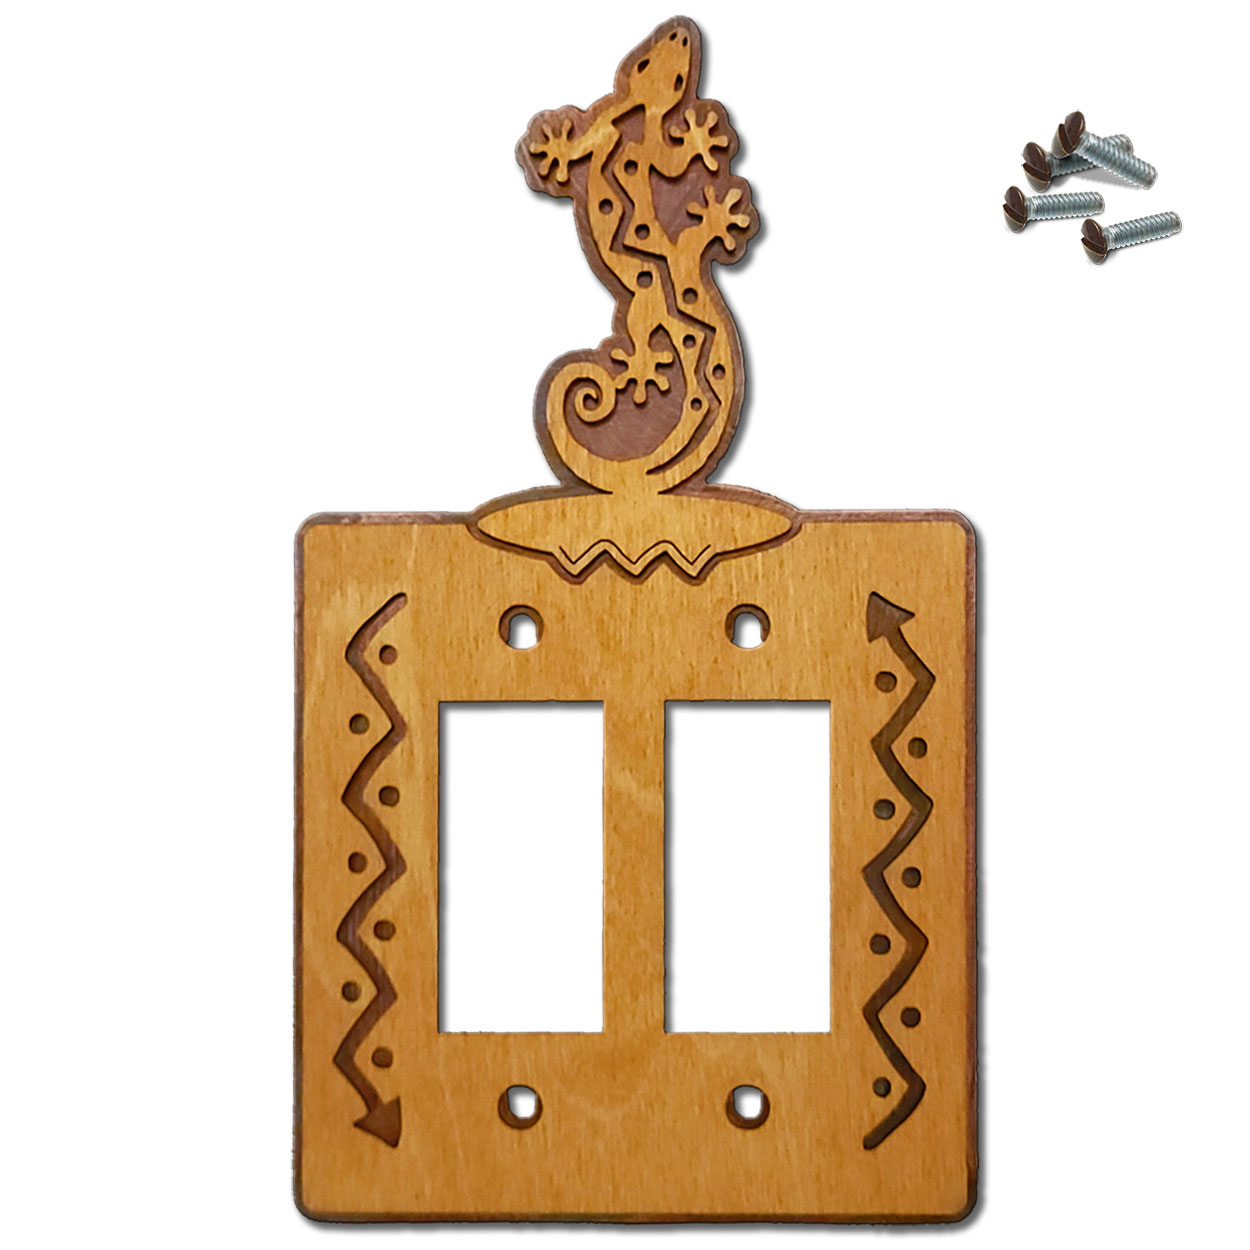 168022R -  Climbing Gecko Southwestern Decor Double Rocker Switch Plate in Golden Sienna